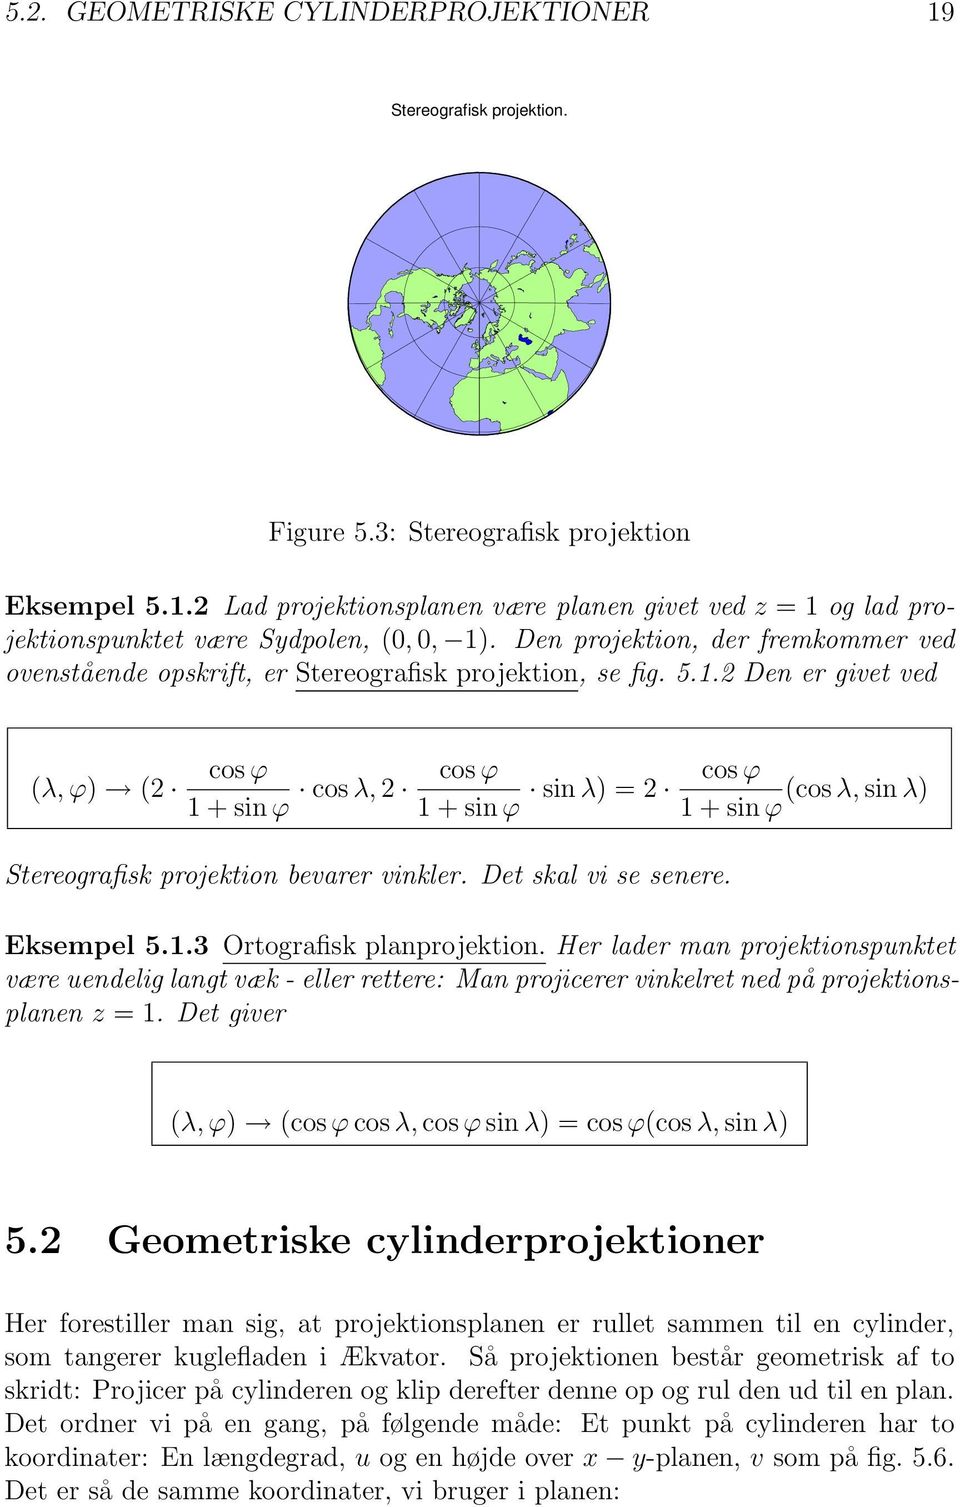 2 Den er givet ved (λ,ϕ) (2 cosϕ 1 + sin ϕ cosλ, 2 cosϕ 1 + sin ϕ sin λ) = 2 cosϕ (cosλ, sin λ) 1 + sinϕ Stereografisk projektion bevarer vinkler. Det skal vi se senere. Eksempel 5.1.3 Ortografisk planprojektion.